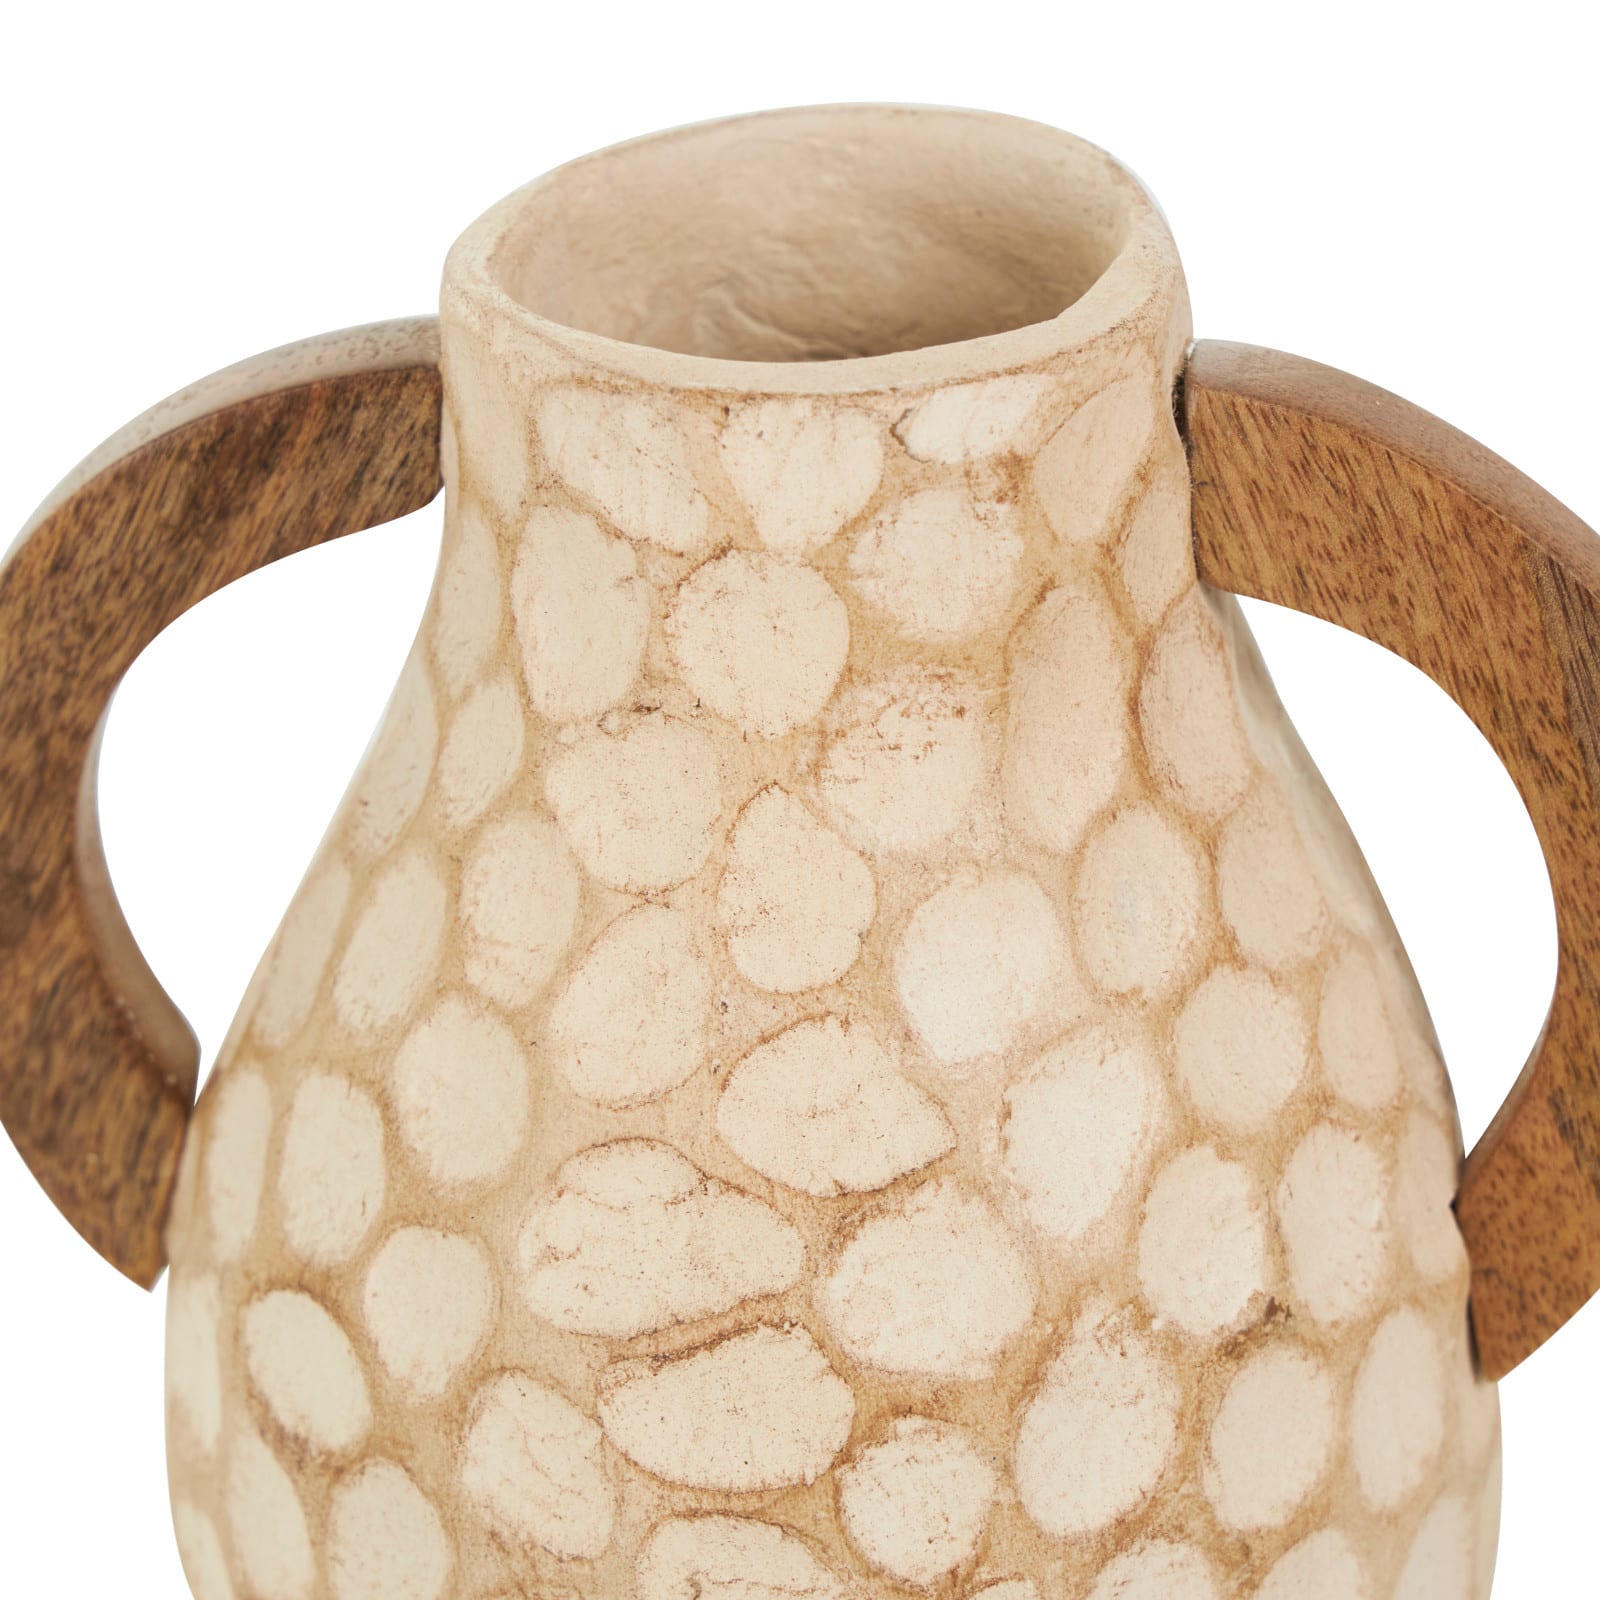 Beige Paper Mache Honeycomb Inspired Jug Vase with Wooden Handle Set